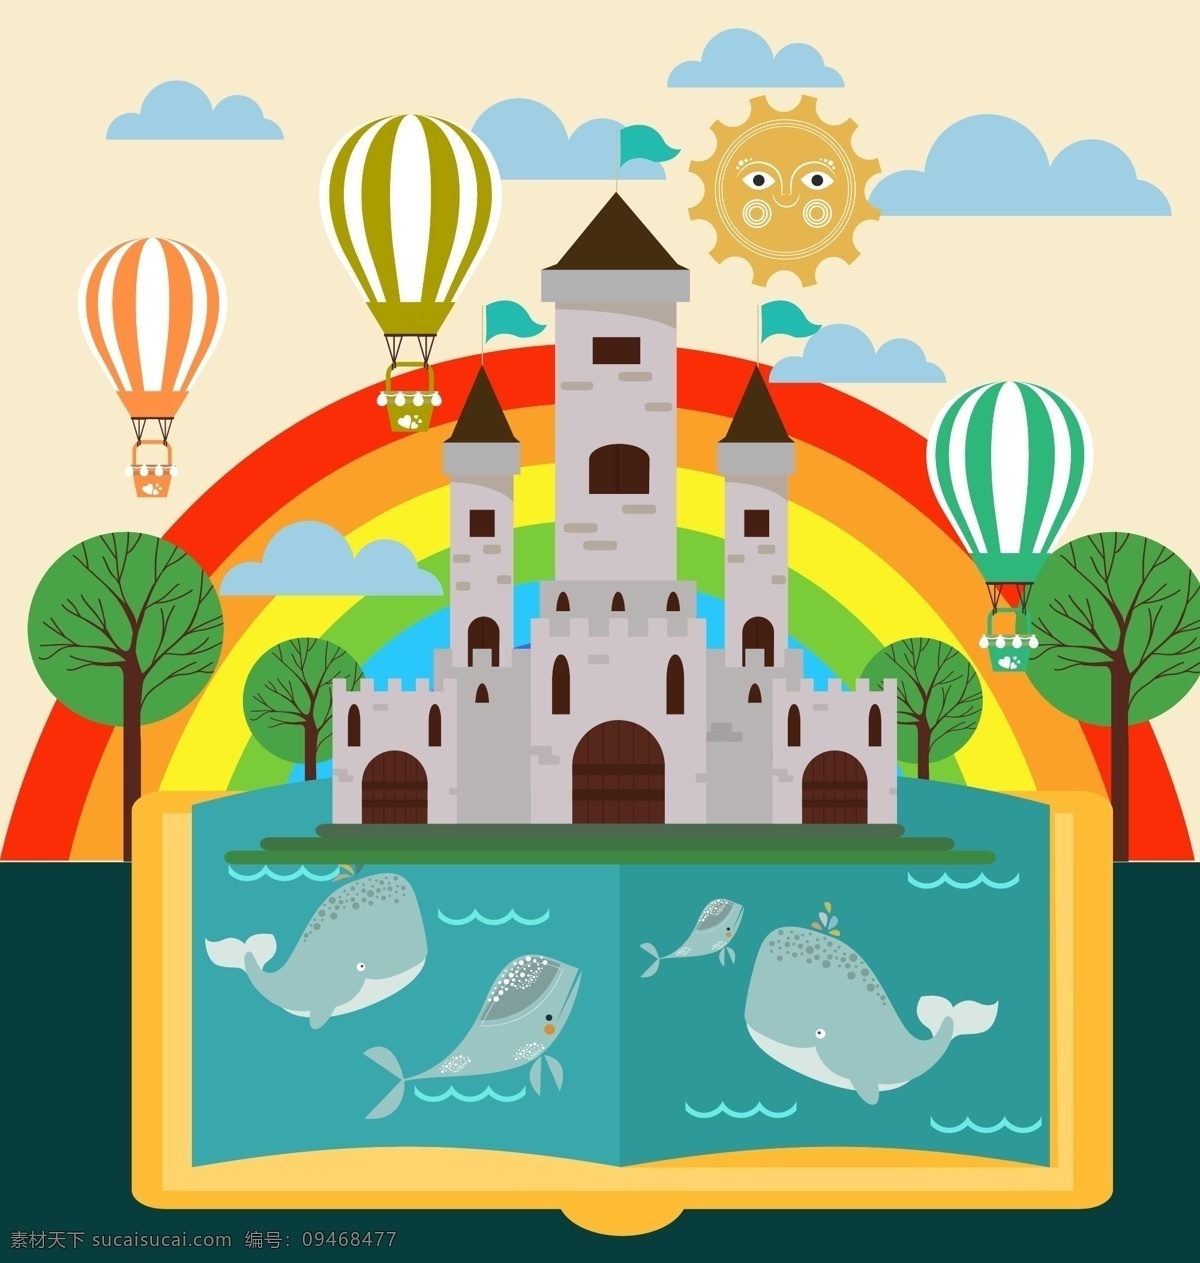 扁平化 彩虹 城堡 插画 扁平化插画 海豚 鲸鱼 热气球 儿童插画 矢量素材 太阳 树木